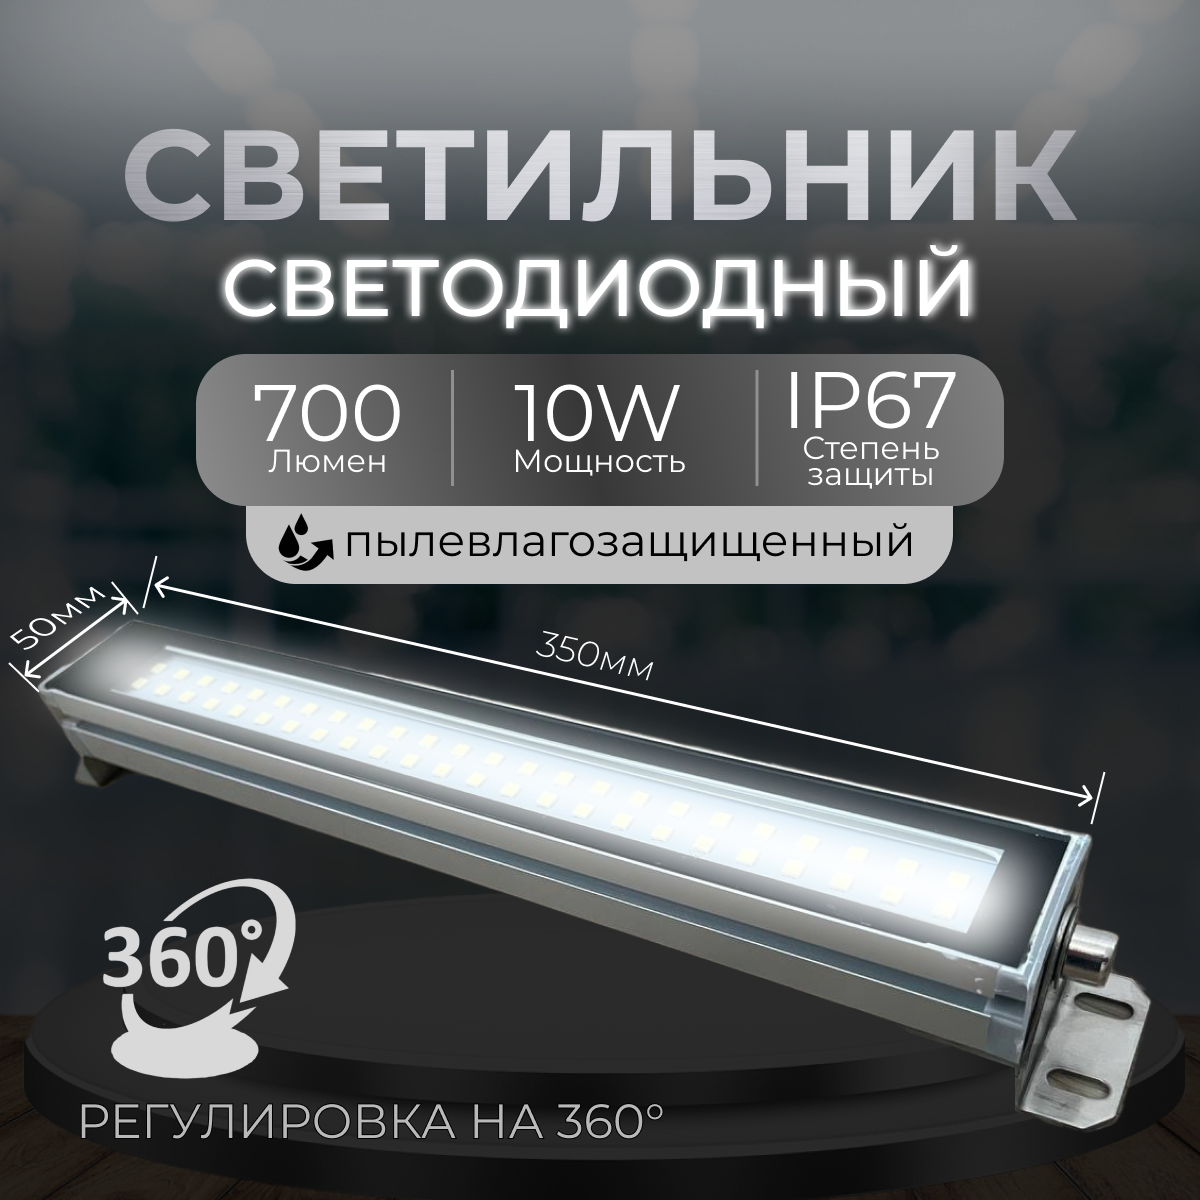 Светильник Линейный, ip67, LED-лампа, 220v, 10вт пылевлагозащищенный, алюминиевый, светодиодный